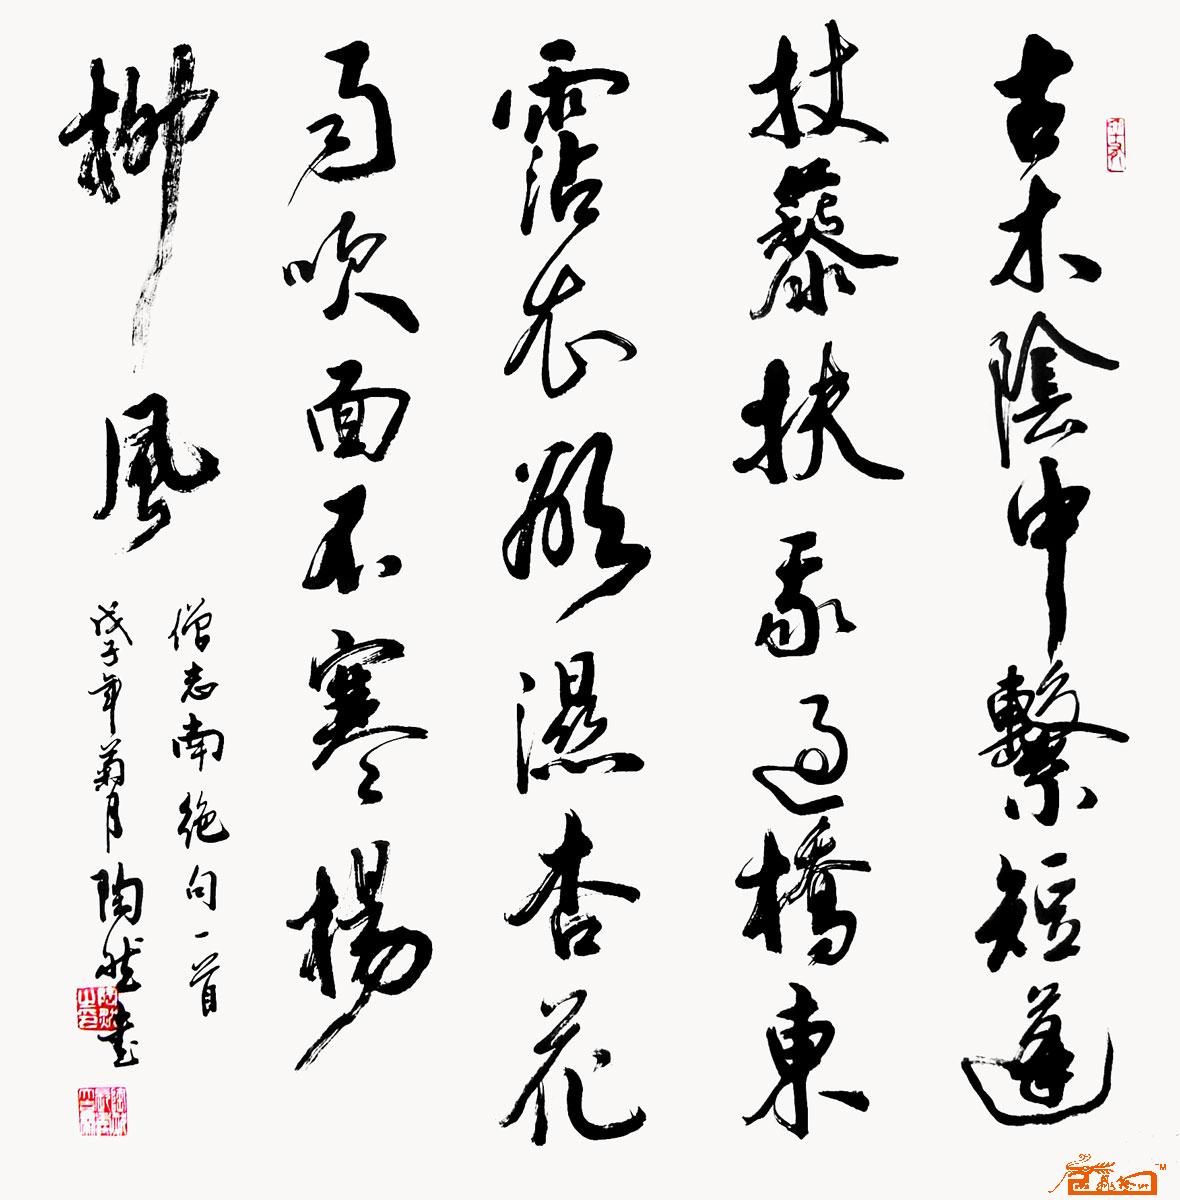 陶然-僧志南绝句-淘宝-名人字画-中国书画